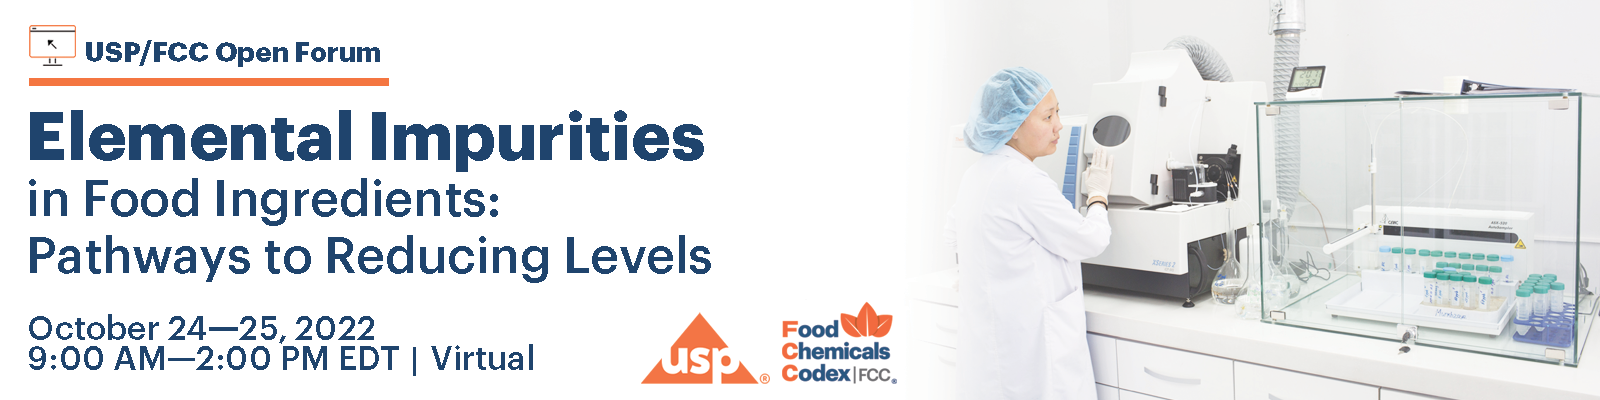 Elemental Impurities in Food Ingredients: Pathways to Reducing Levels